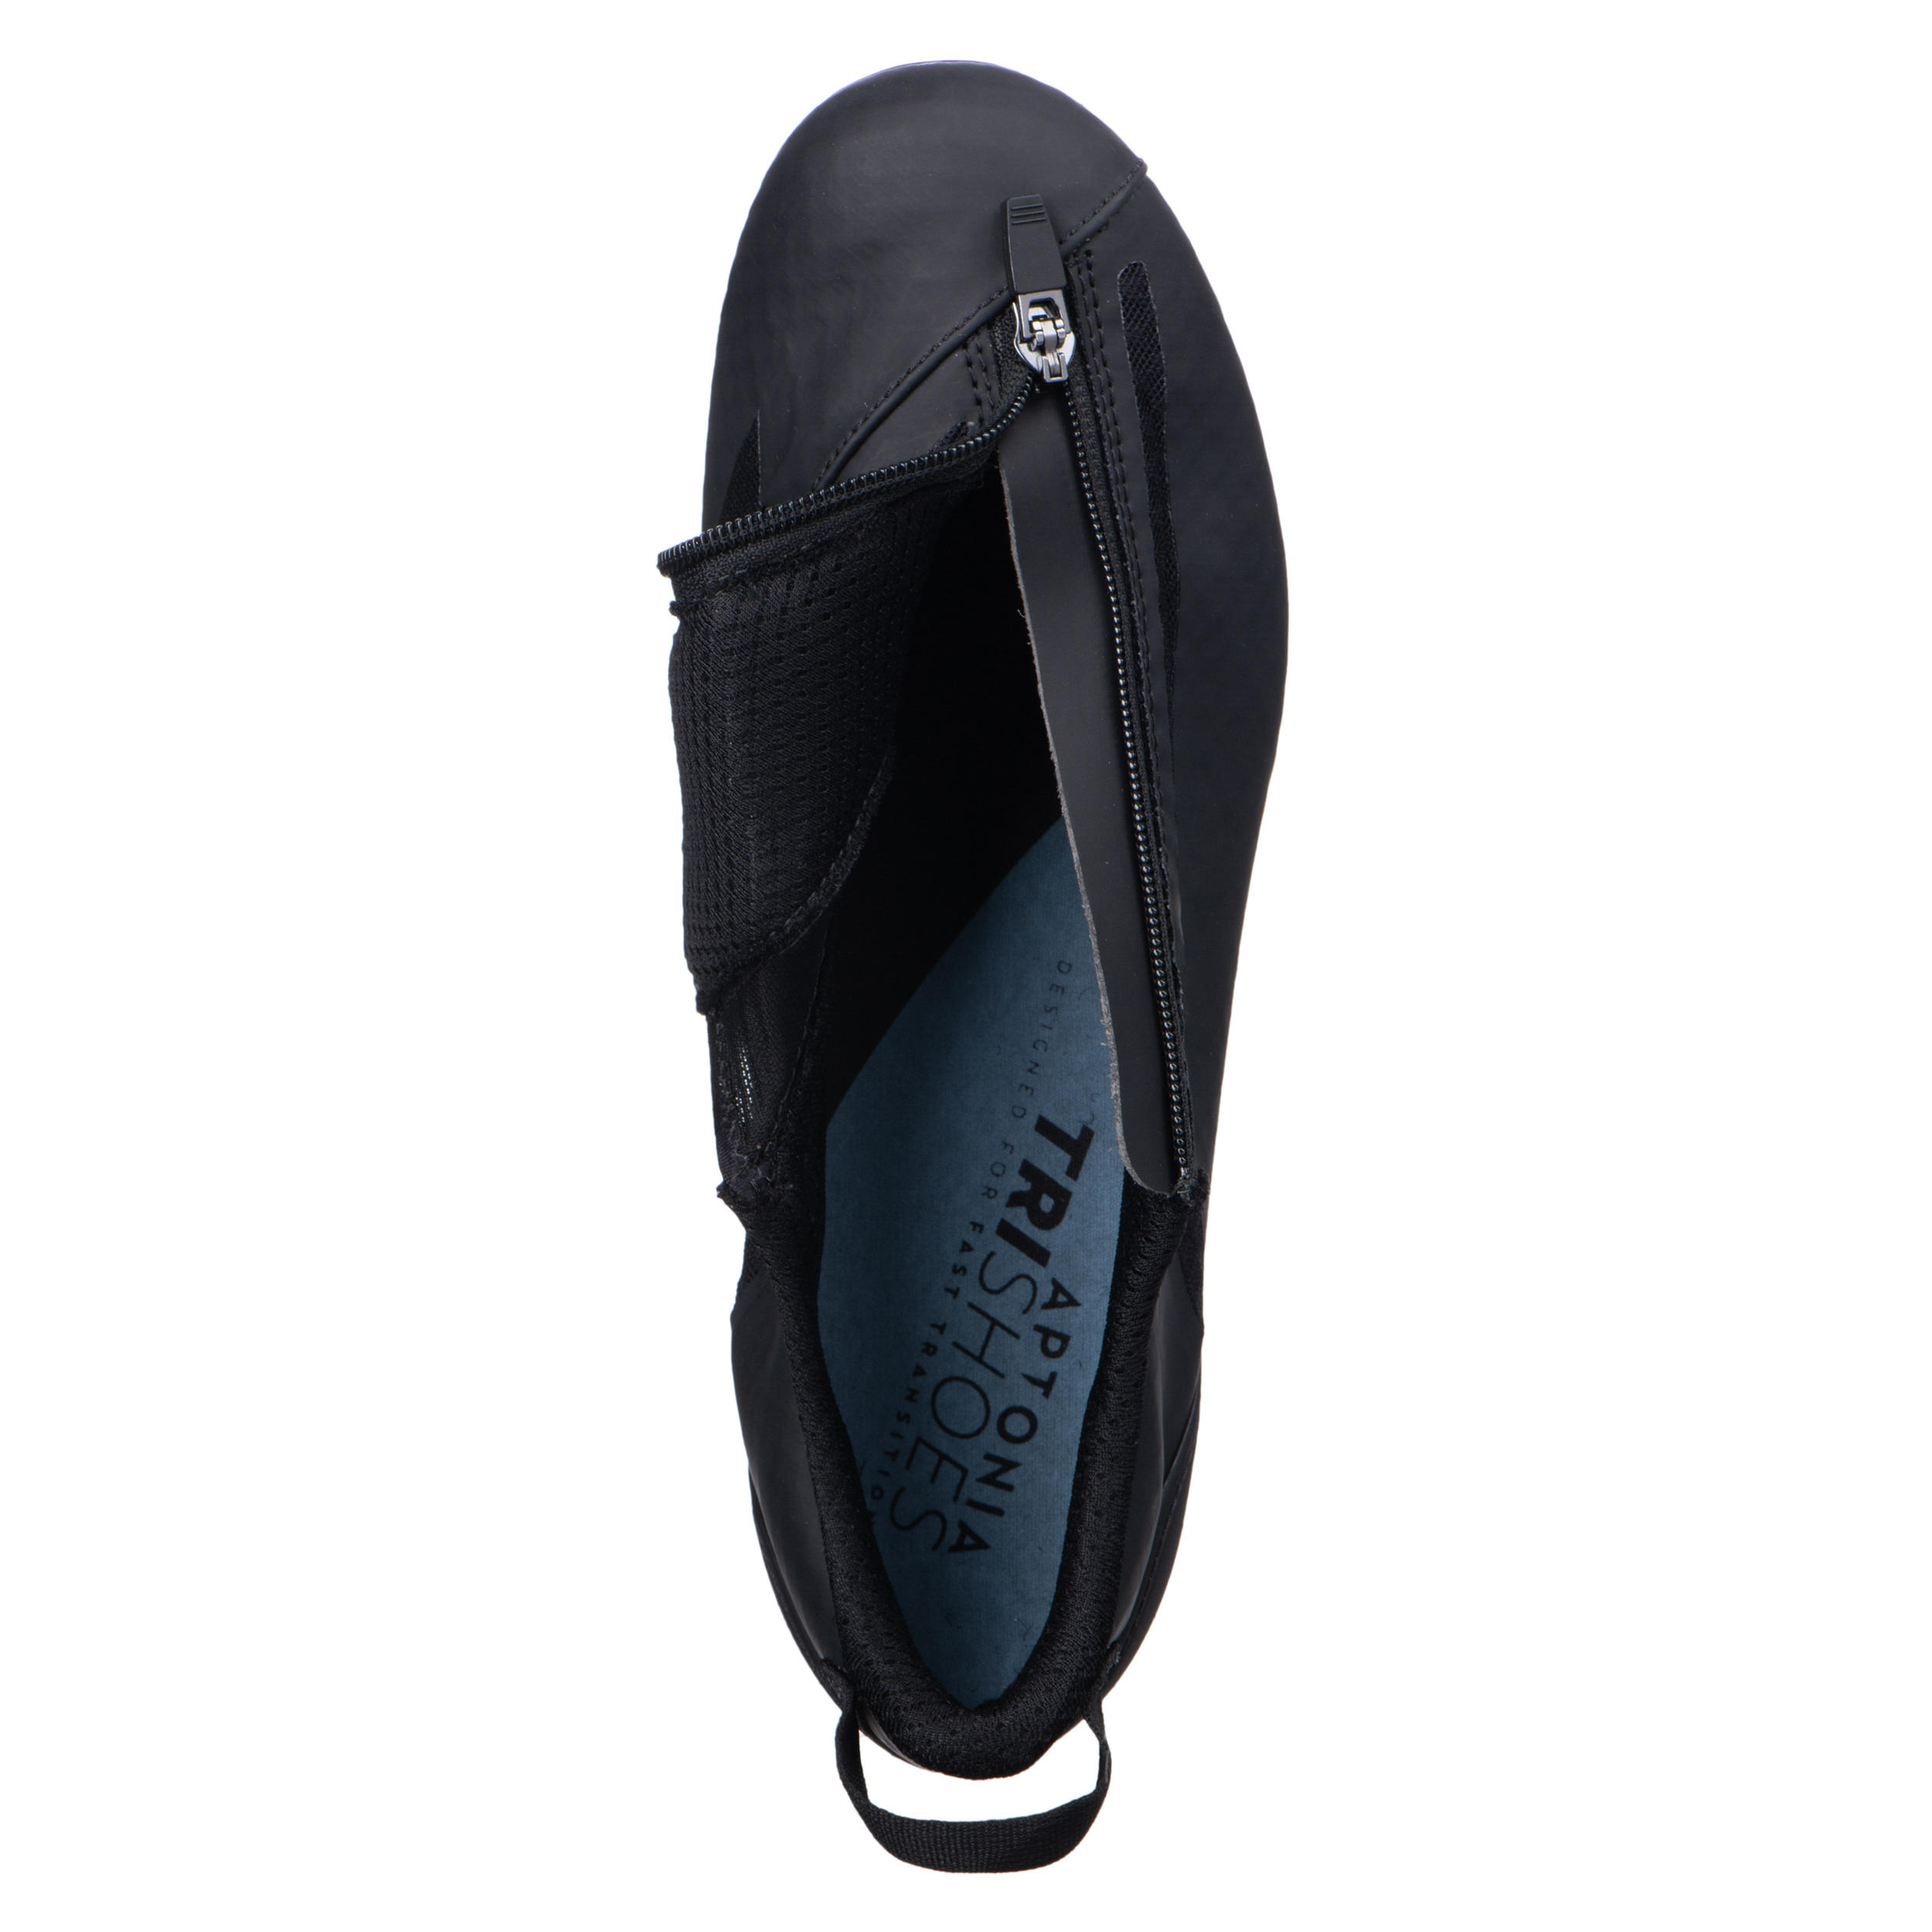 Aptonia Triathlon Cycling Shoes - Black 4/8